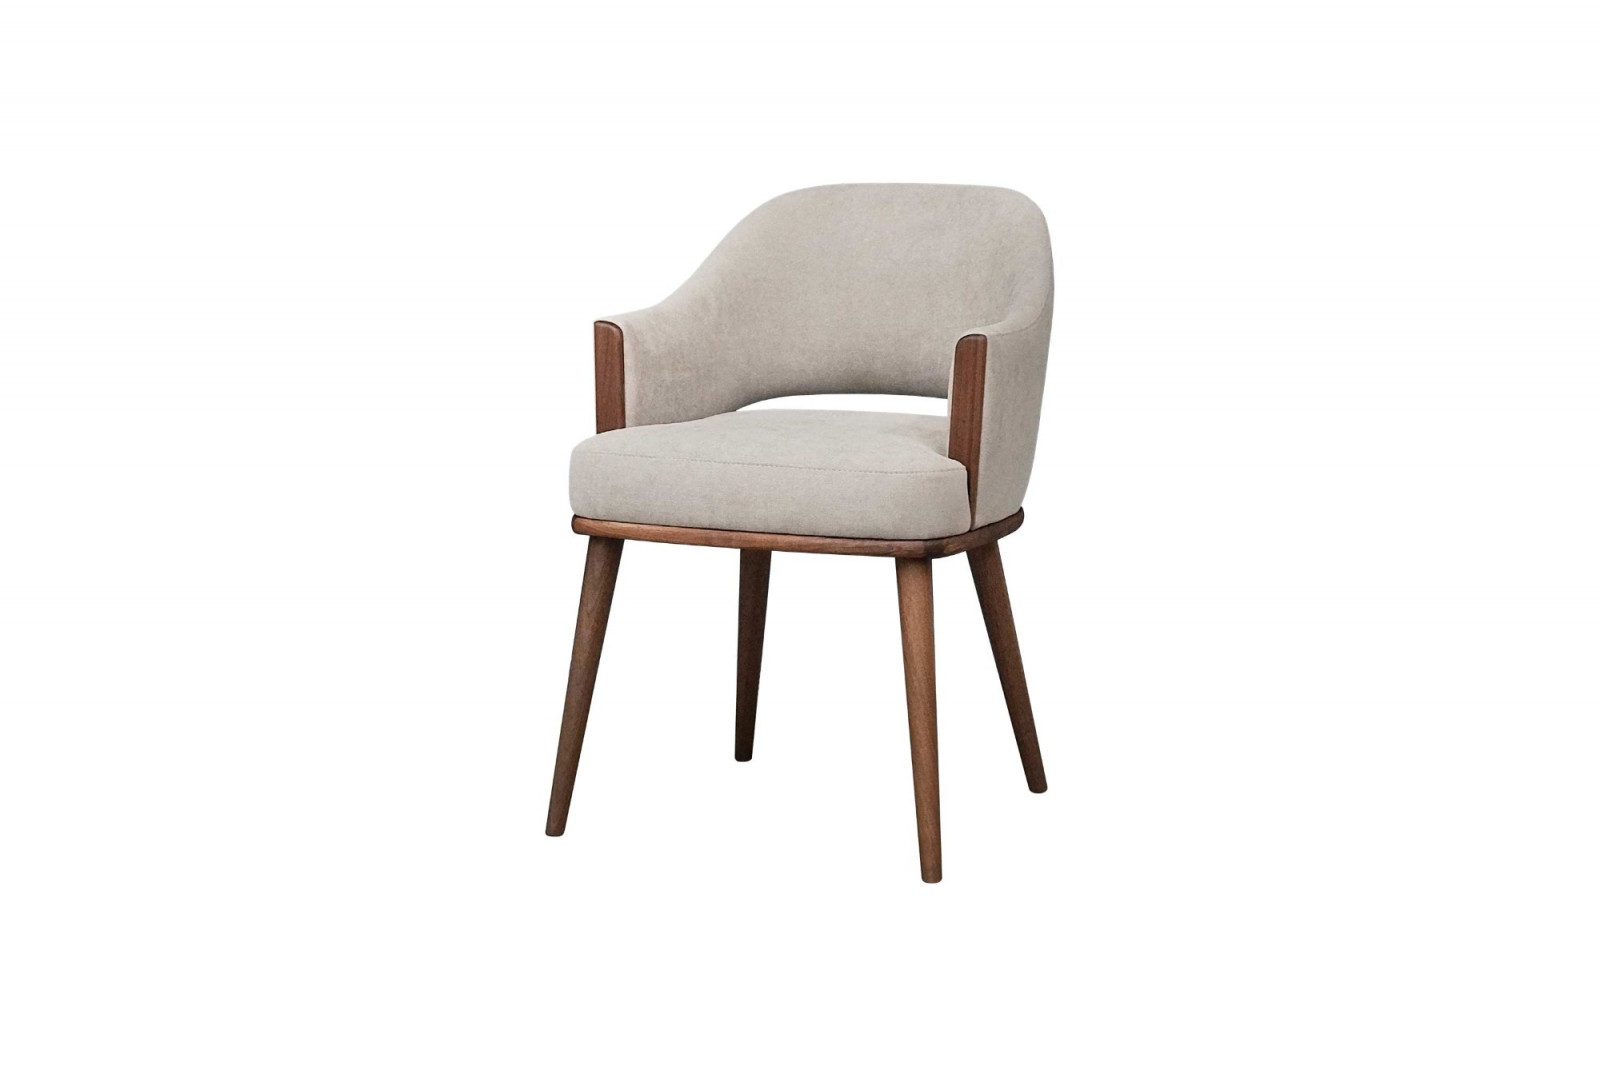 chair_interior_indoor_elegant_modern_wood_juliet_gansk_2-1196-1600-1400-100